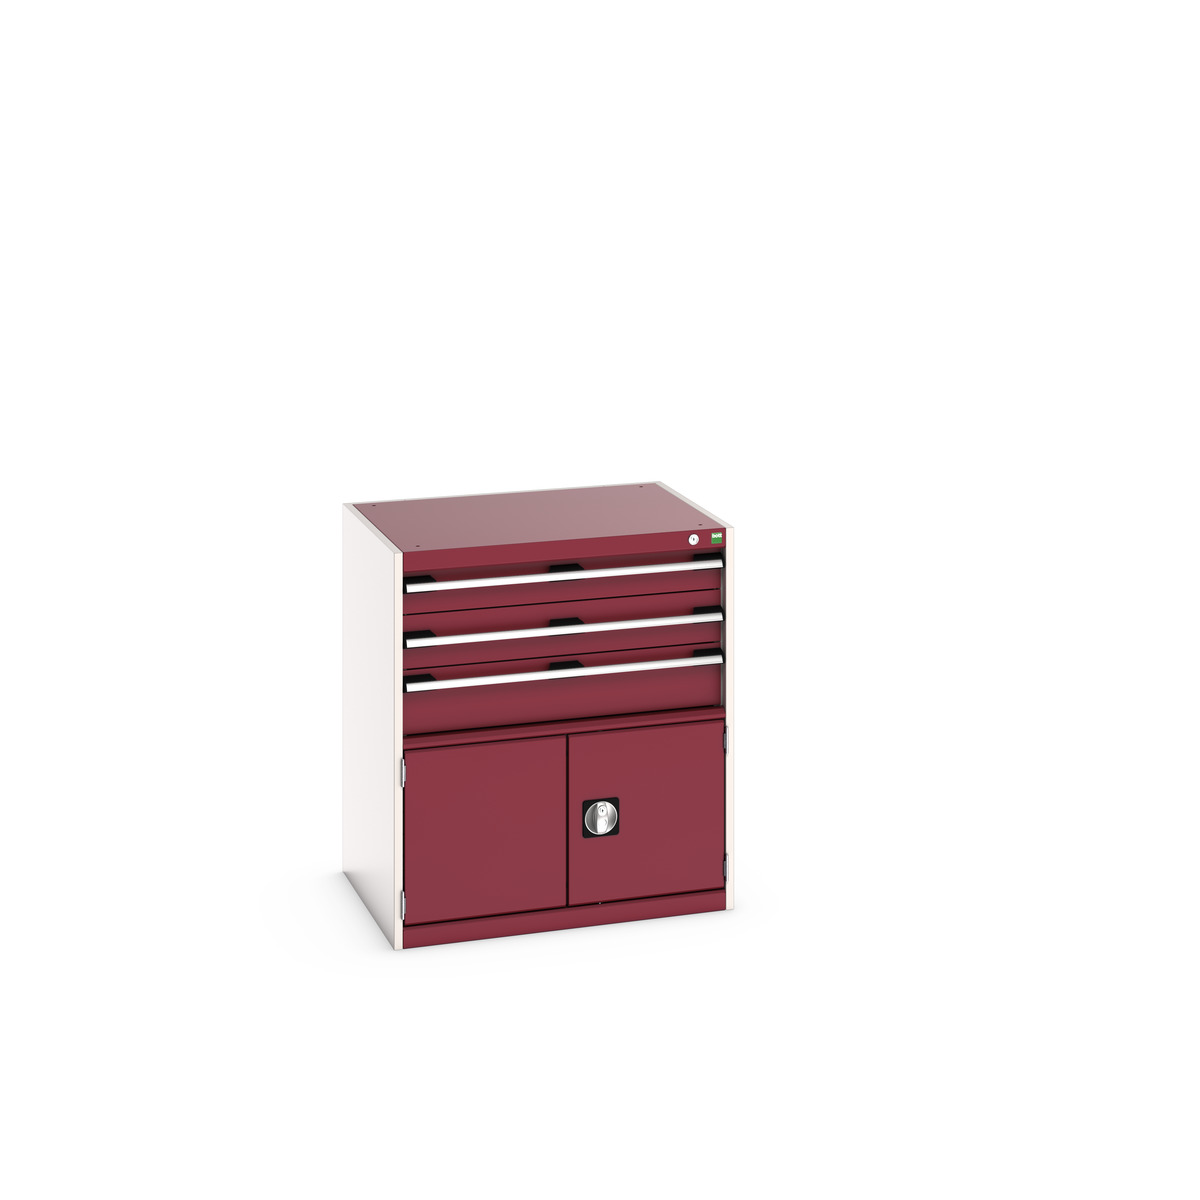 40020034.24V - cubio drawer-door cabinet